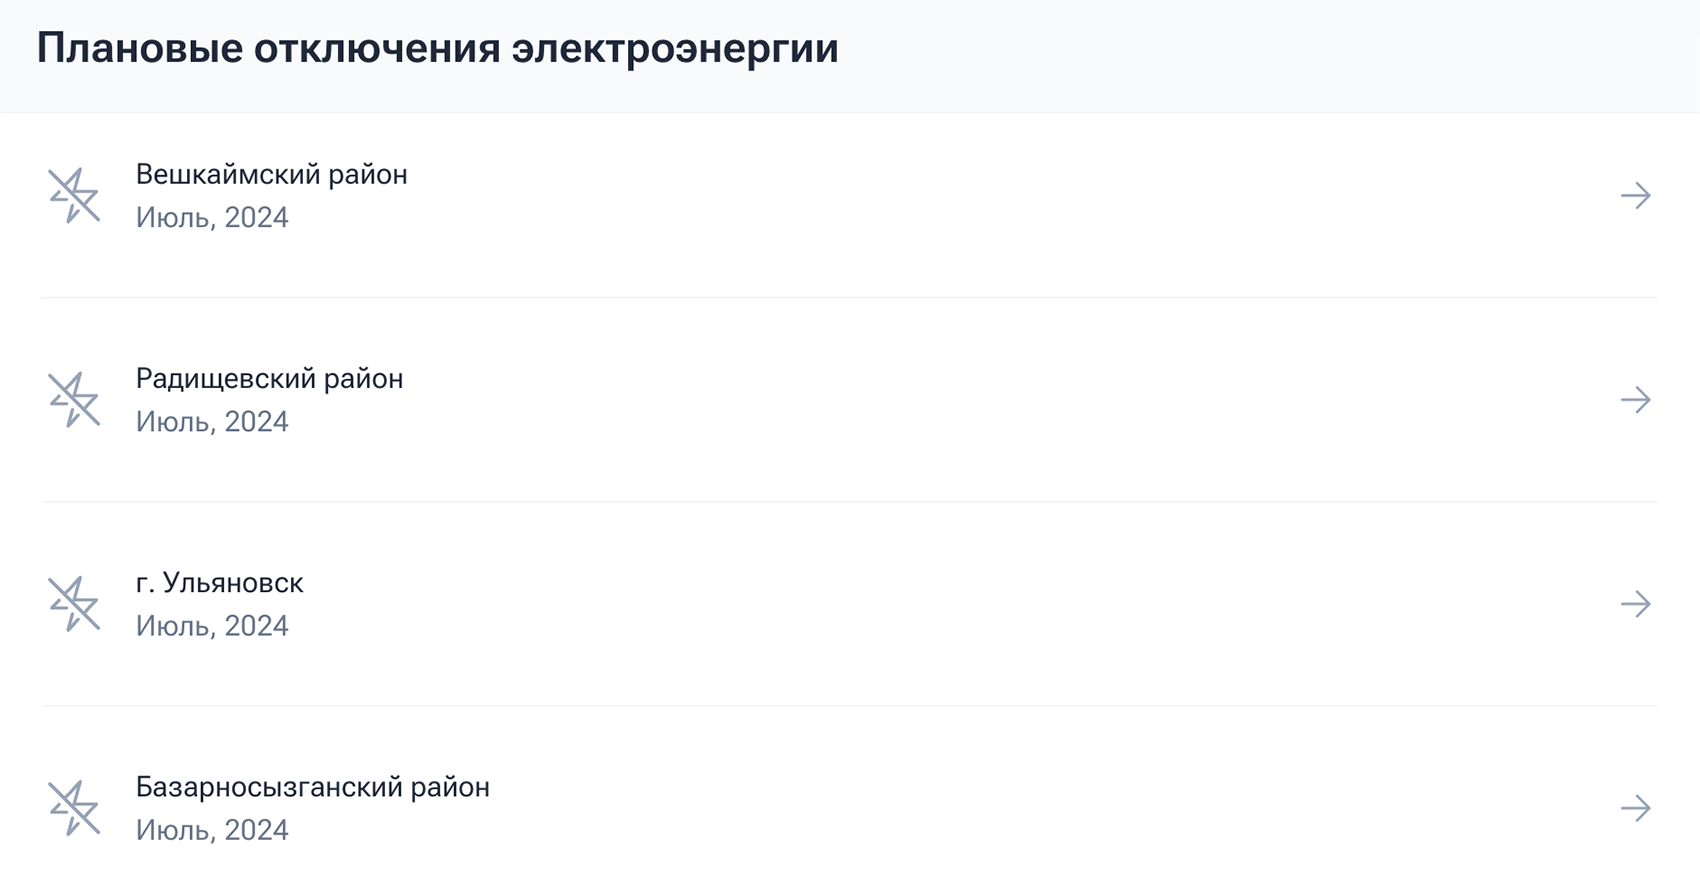 А так выглядят уведомления о плановых отключениях в Ульяновской области. Источник: ulenergo.ru